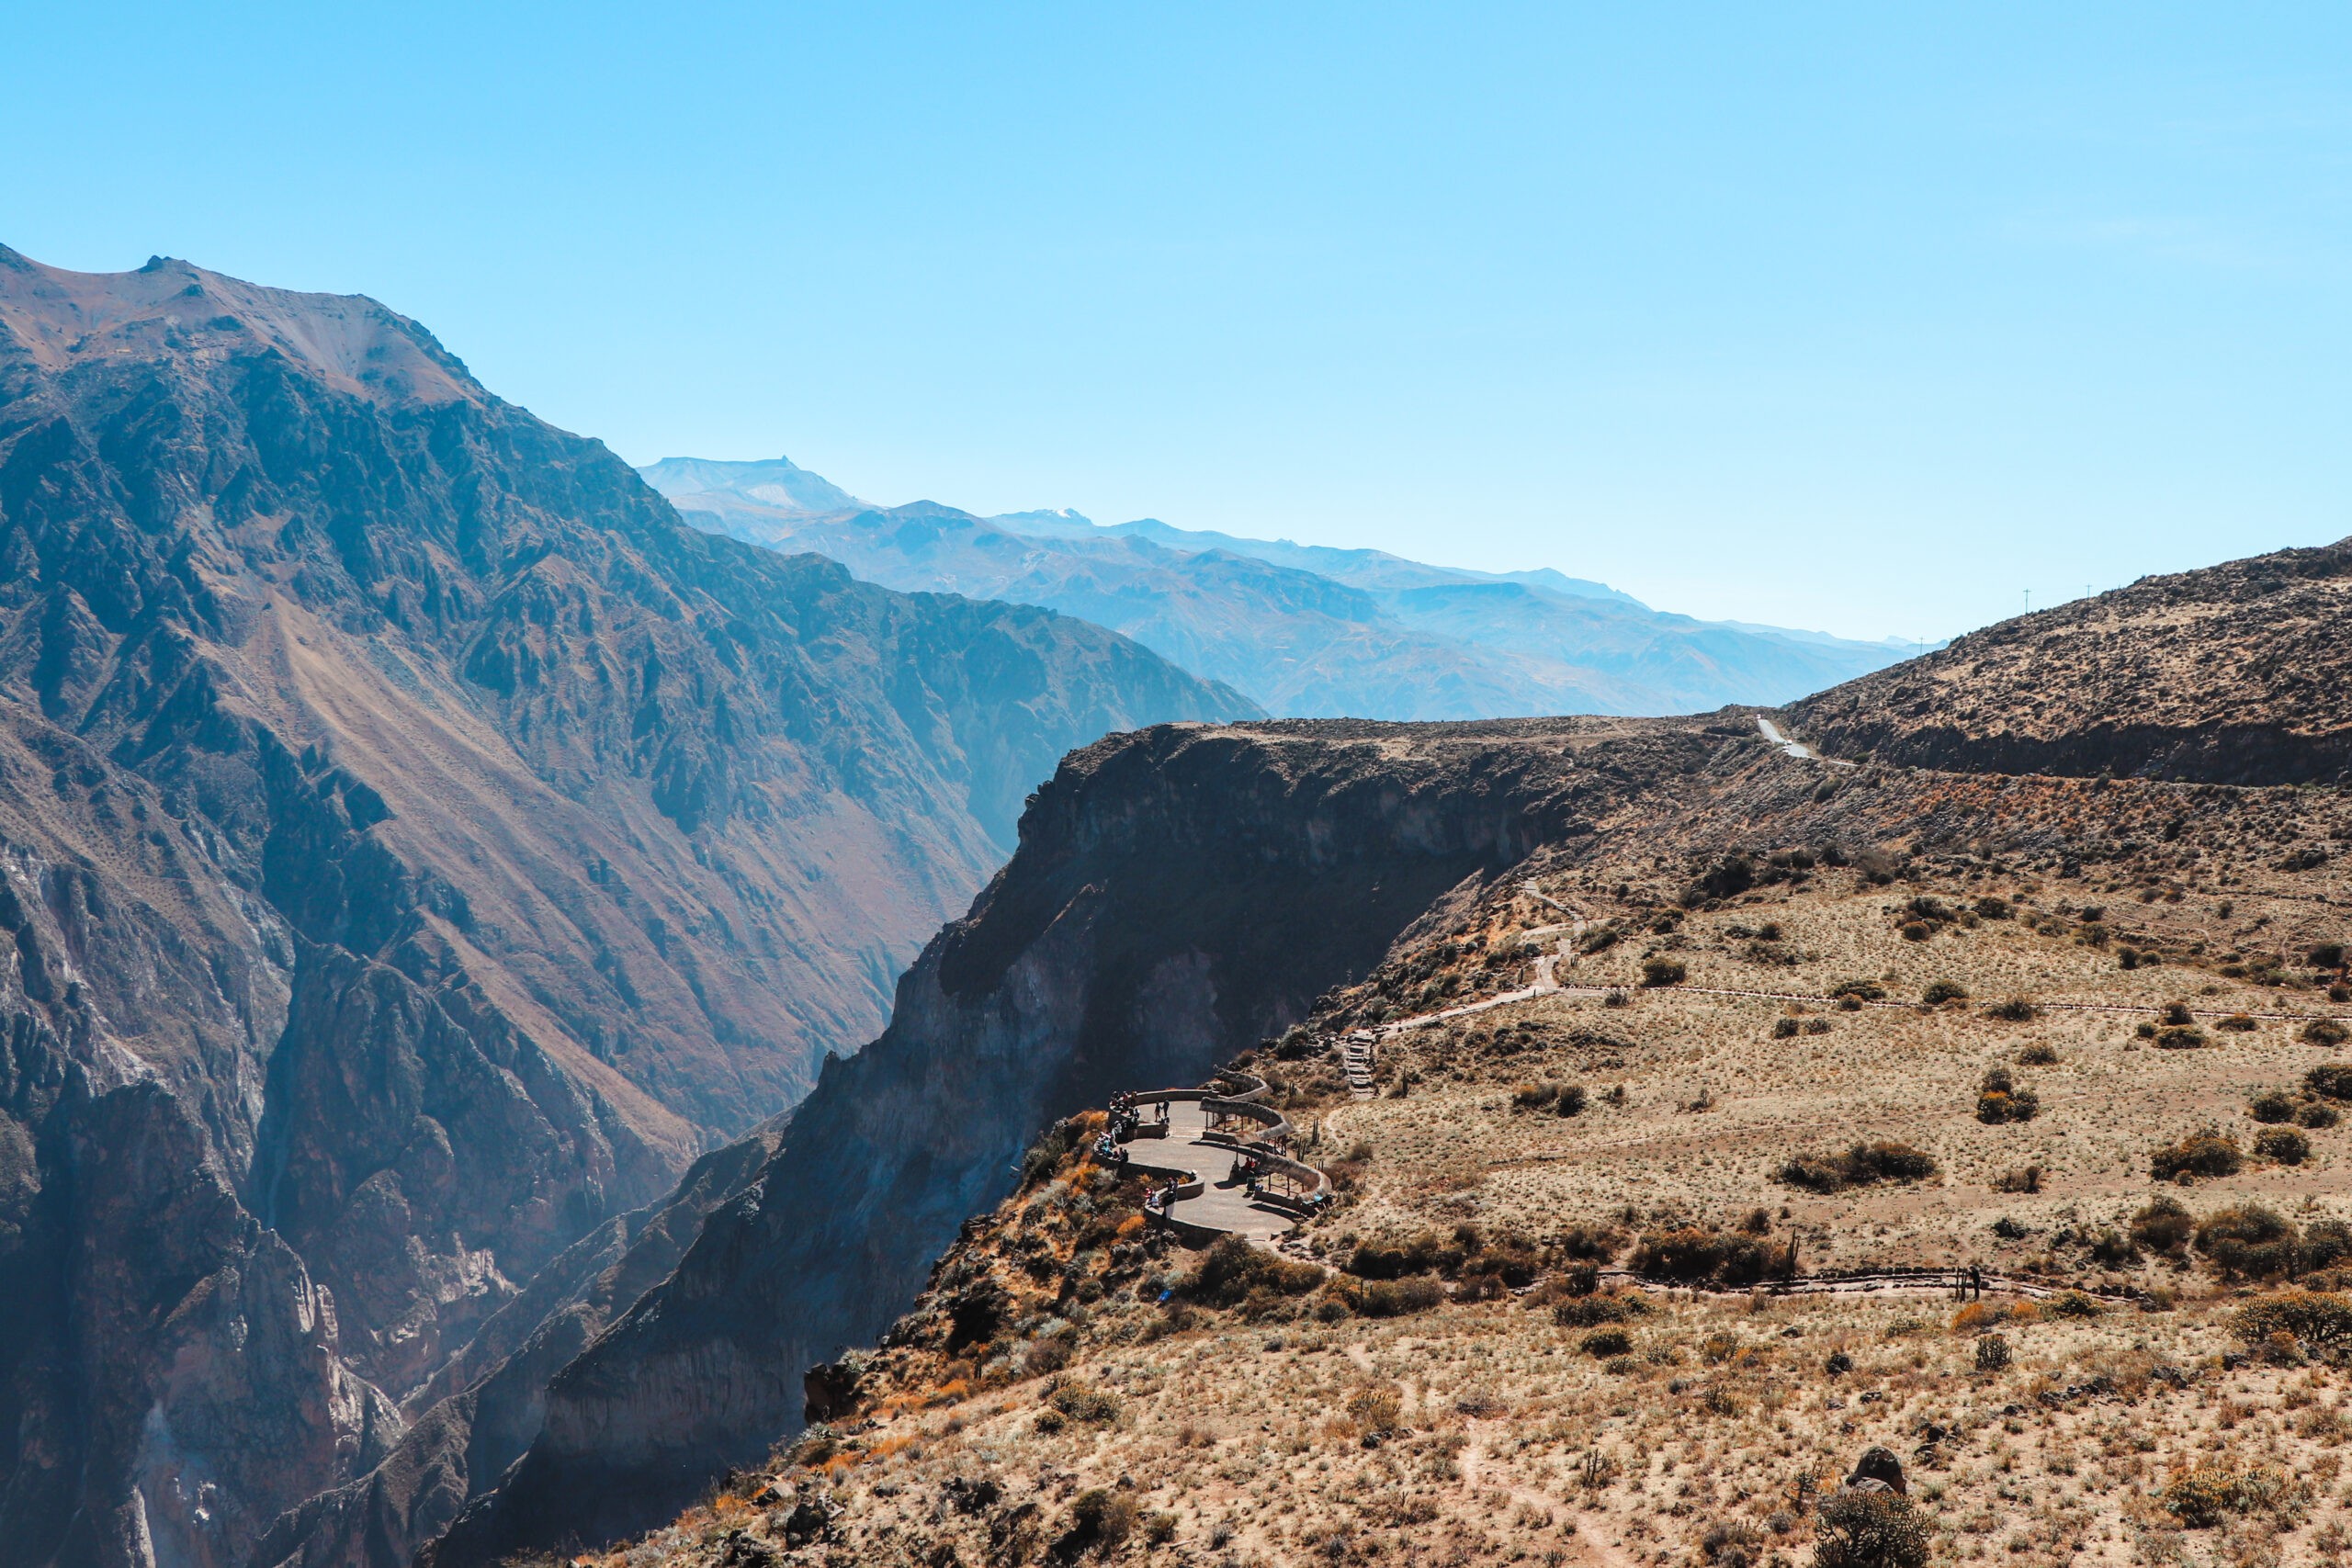 Colca Canyon Guide: Viewpoint Cruz del Condor